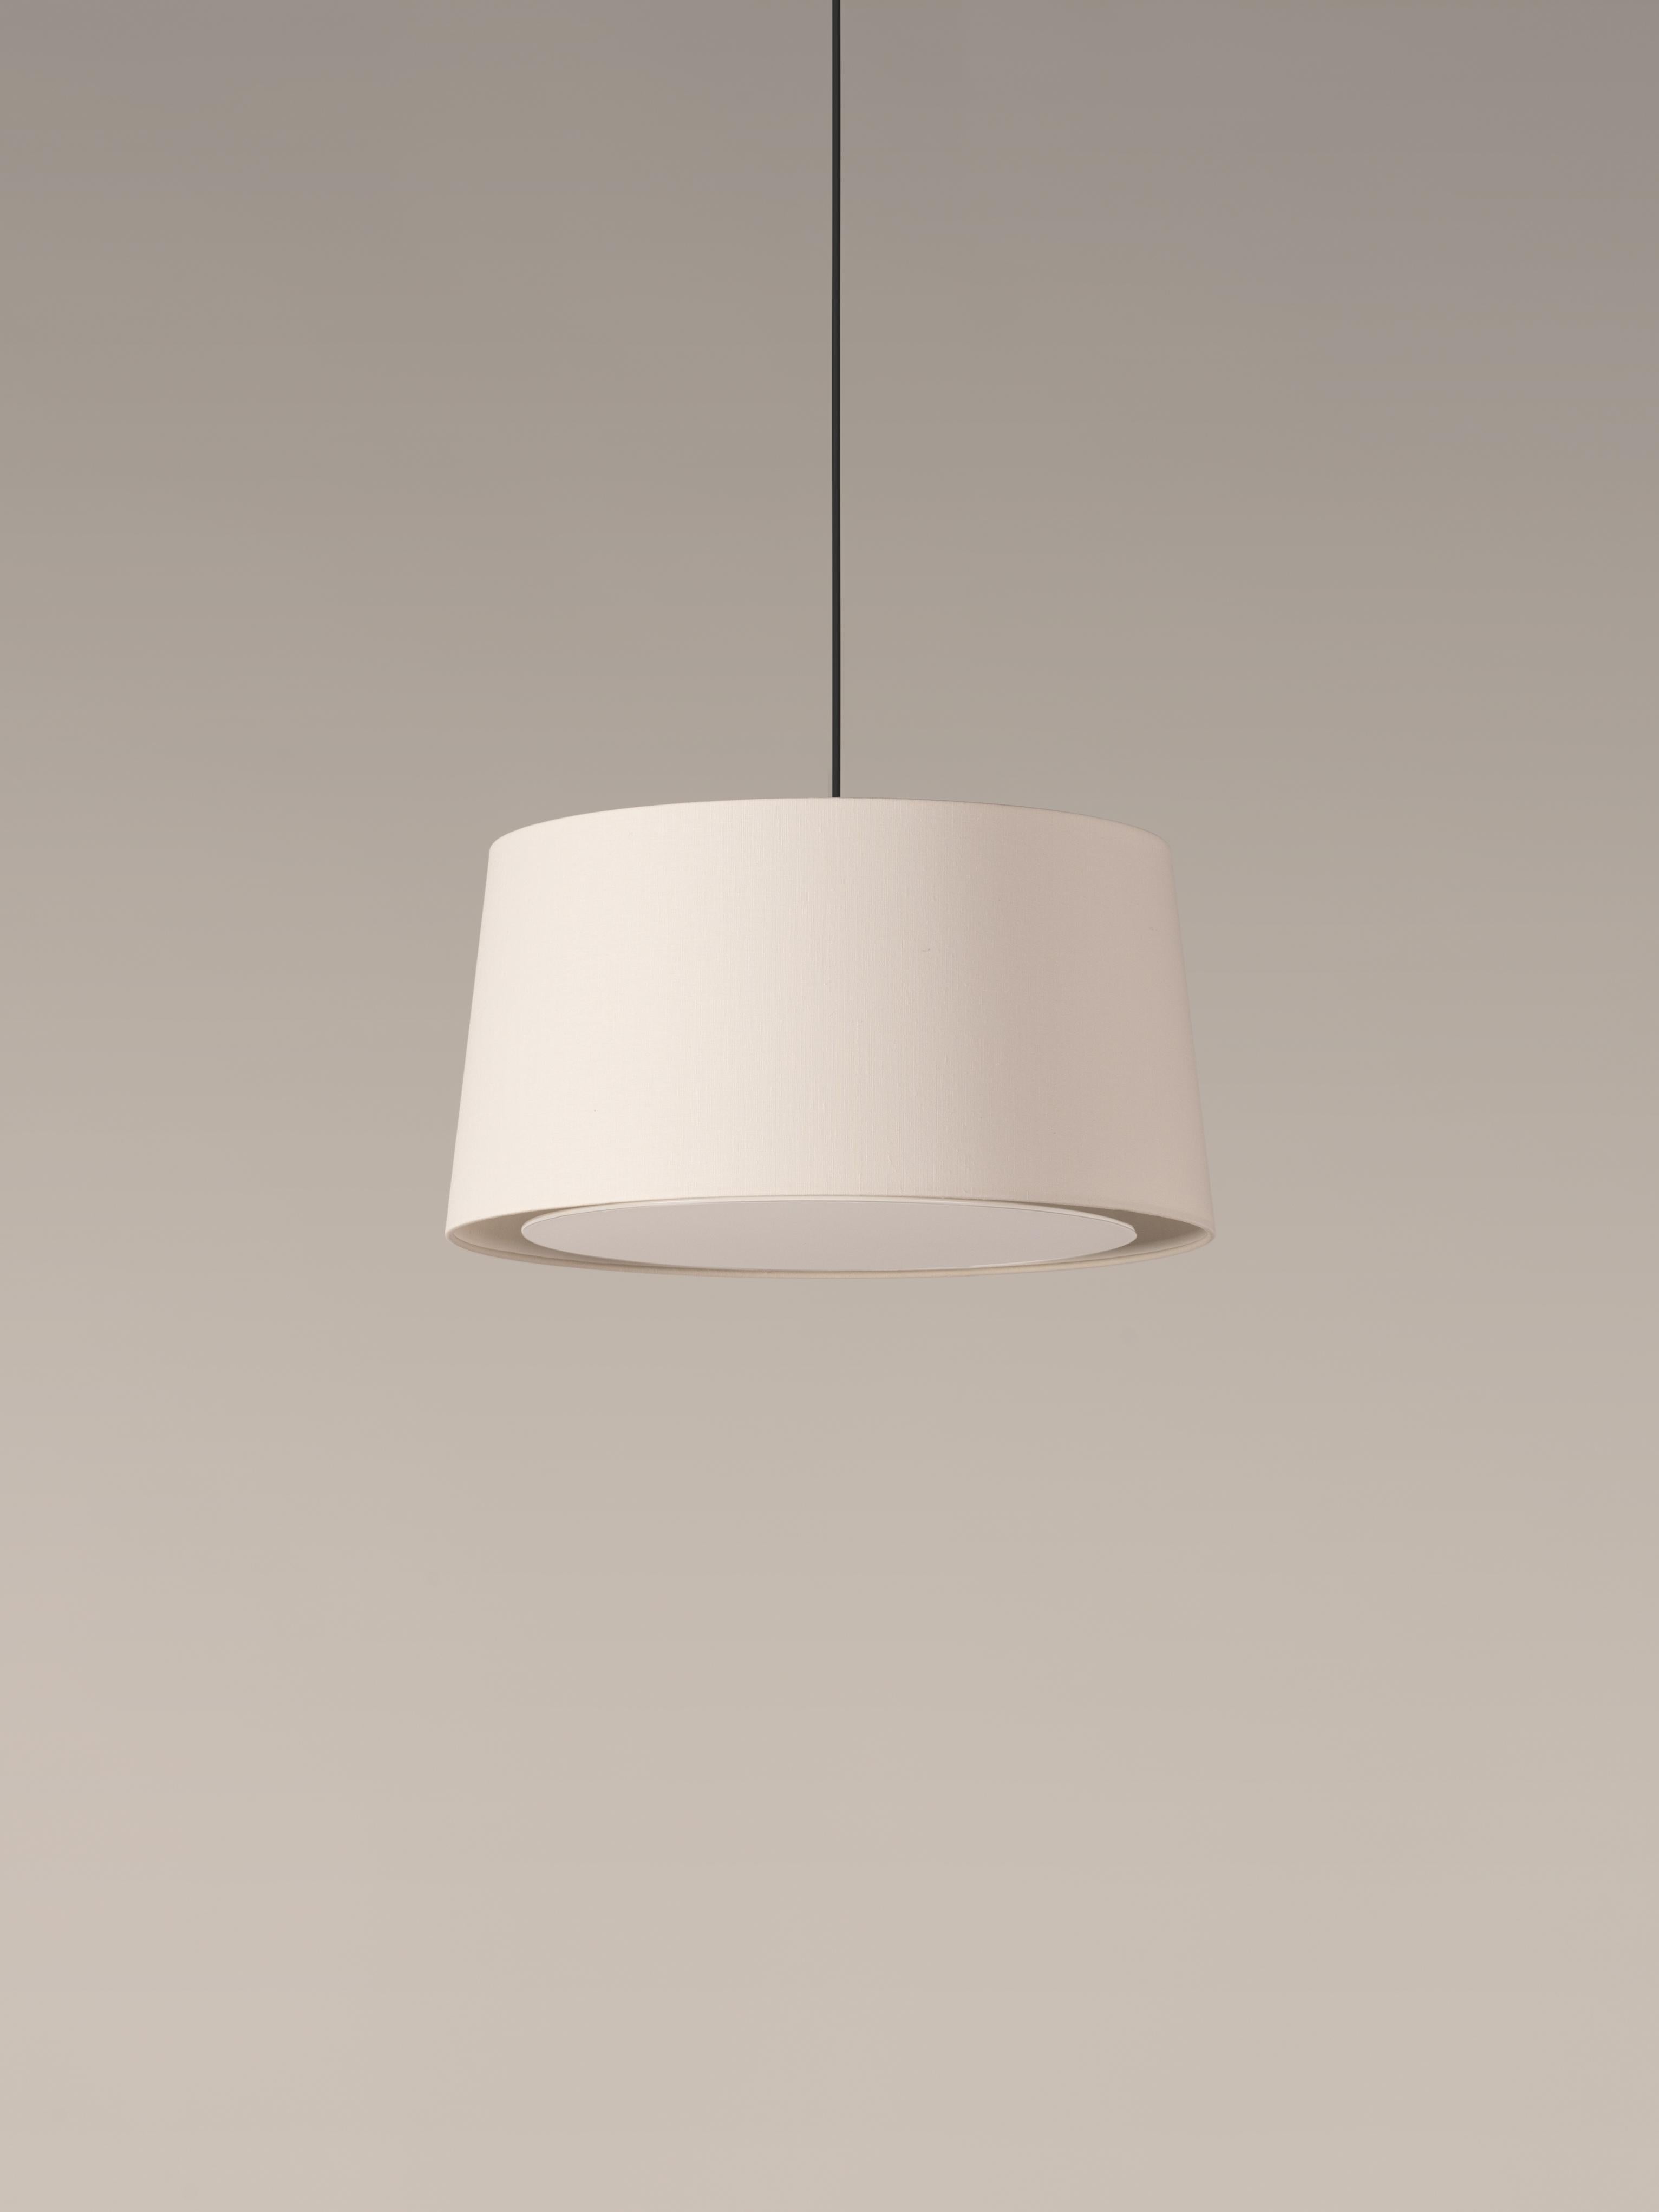 Lampe suspendue White GT6 de Santa & Cole
Dimensions : D 45 x H 23 cm
Matériaux : Métal, lin.
Disponible dans d'autres couleurs. Disponible en version 2 lumières.

Conçues pour les volumes intermédiaires et les espaces domestiques, GT5 et GT6 sont